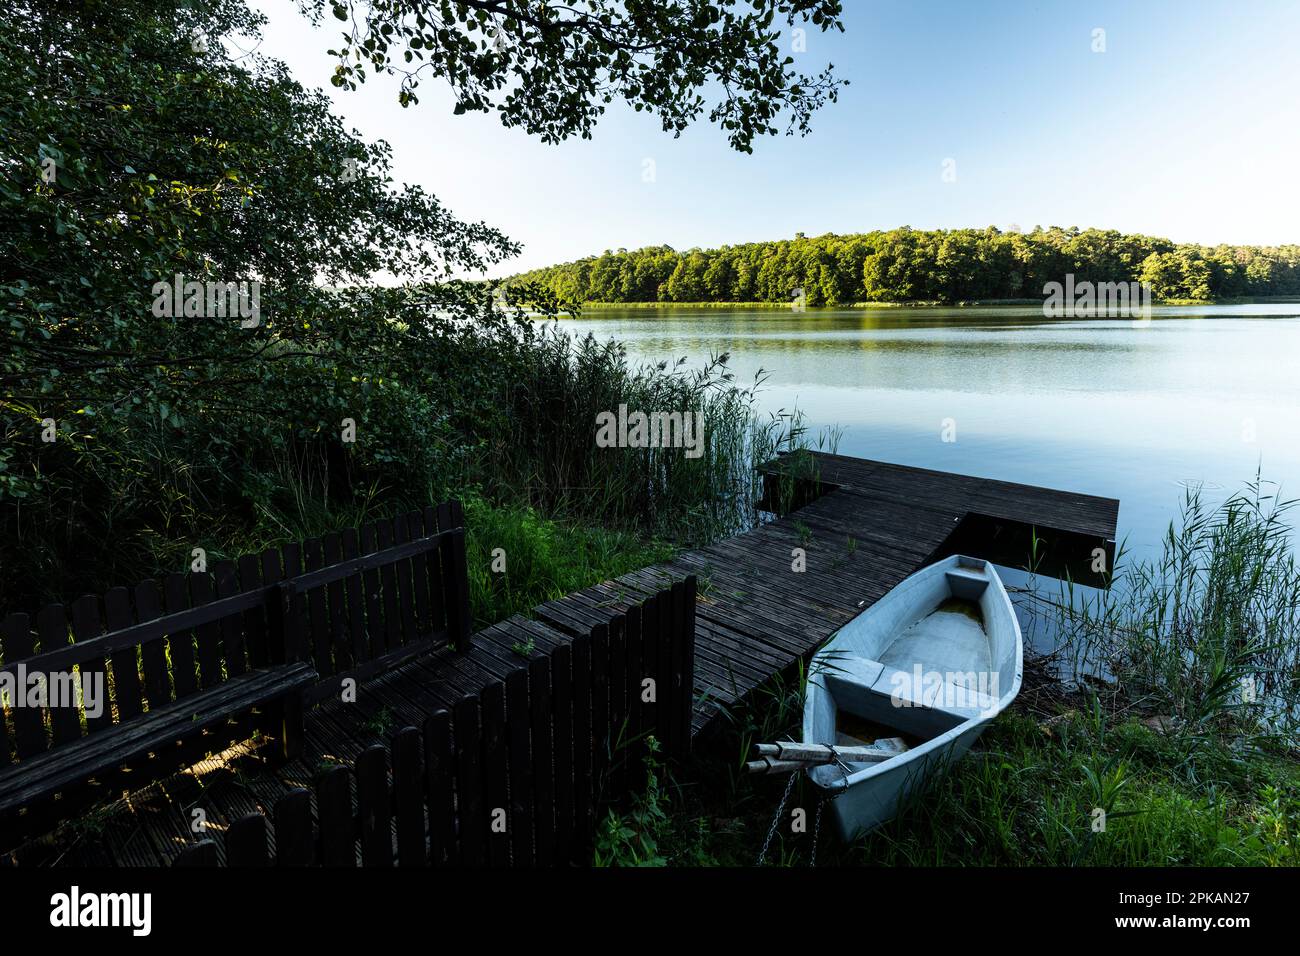 Europe, Poland, Greater Poland, Wielkopolski National Park, Goreckie lake Stock Photo